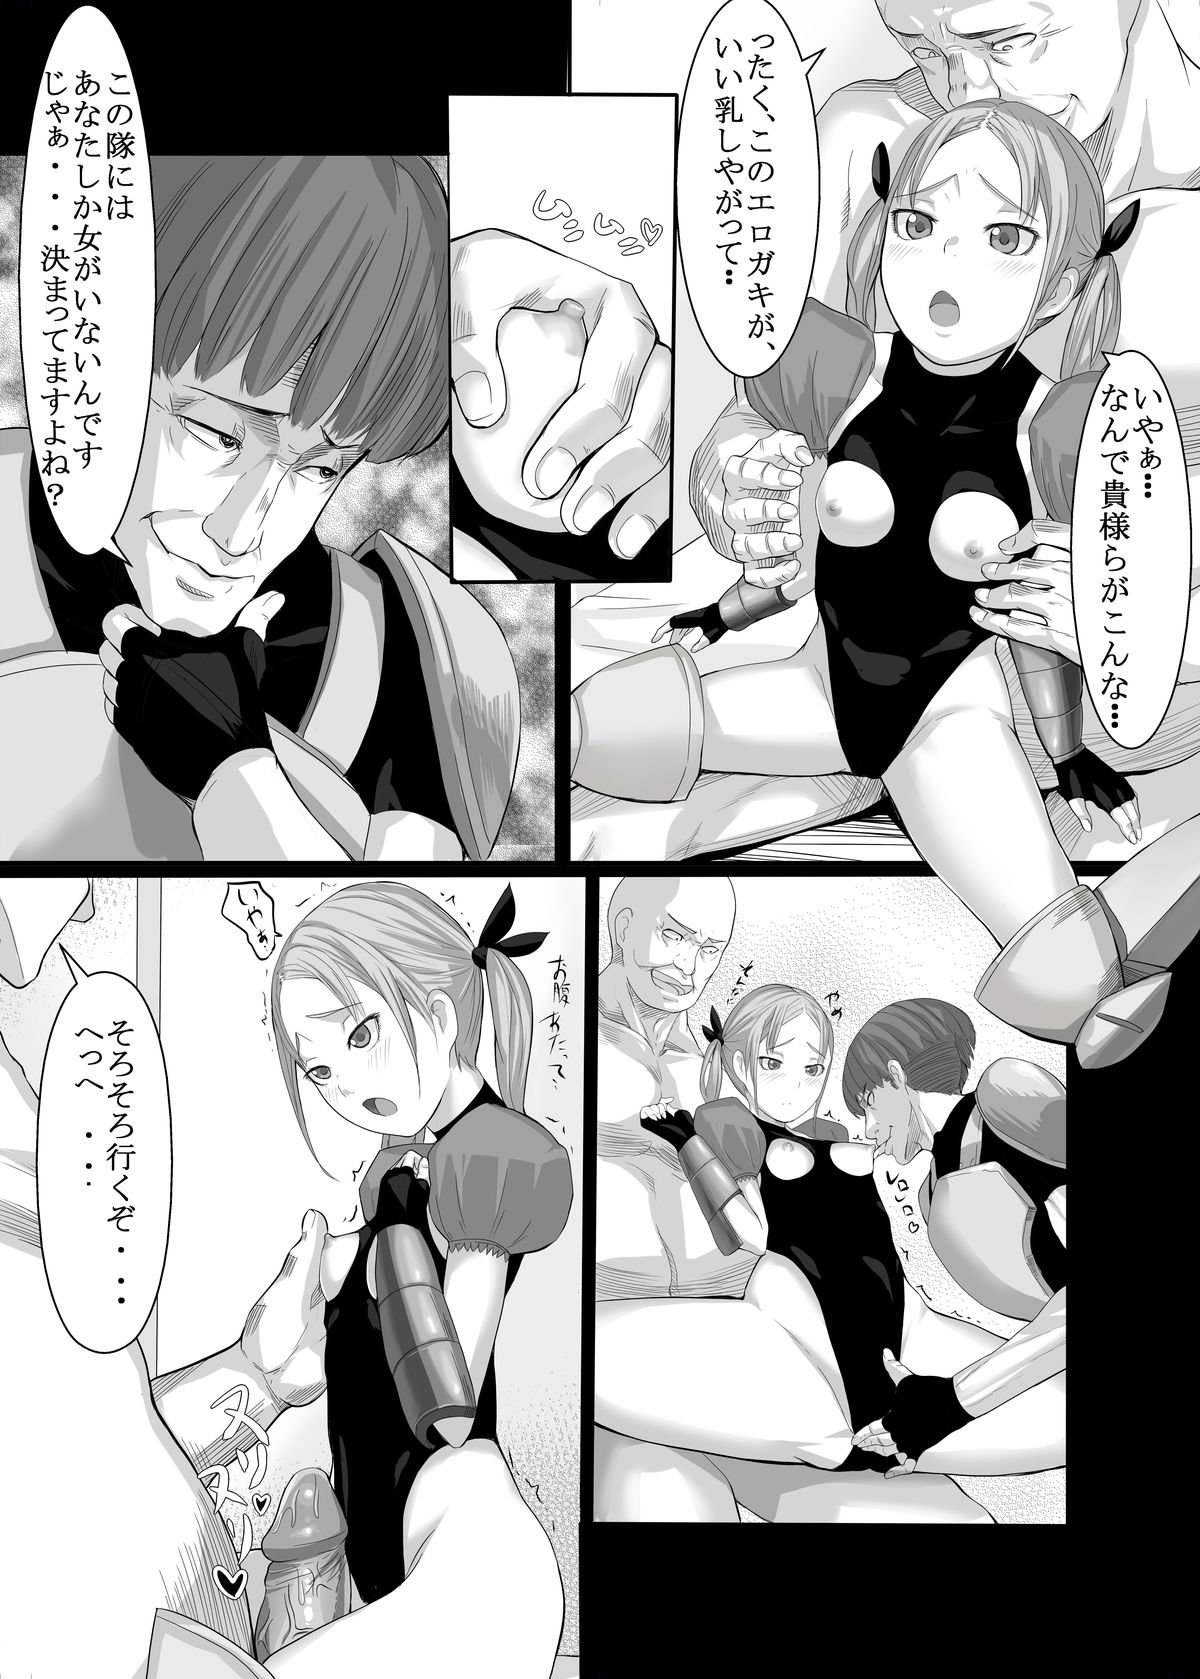 [Jishimaru] 成人向け漫画2P「小っちゃな騎士」 [Digital] page 2 full